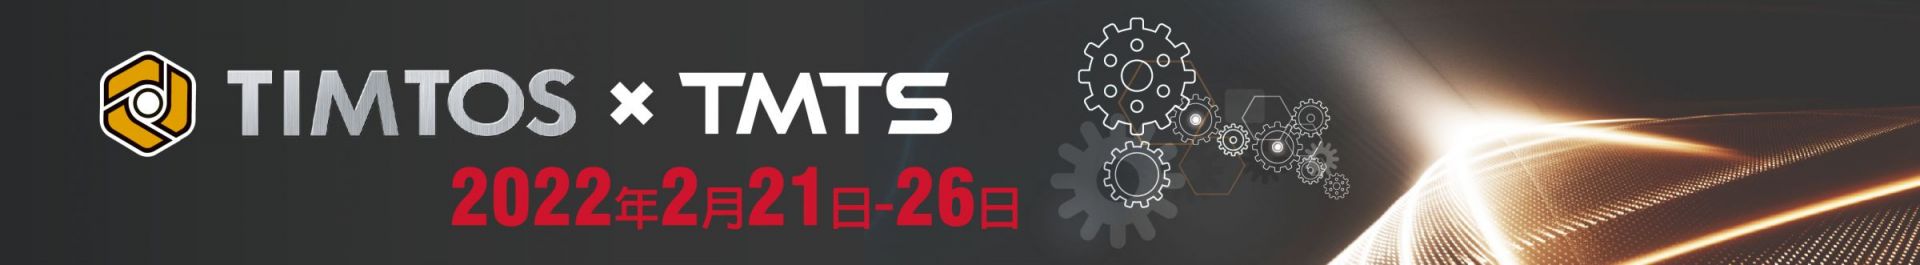 TIMTOS x TMTS 2022 Pameran Alat Mesin Internasional Taipei